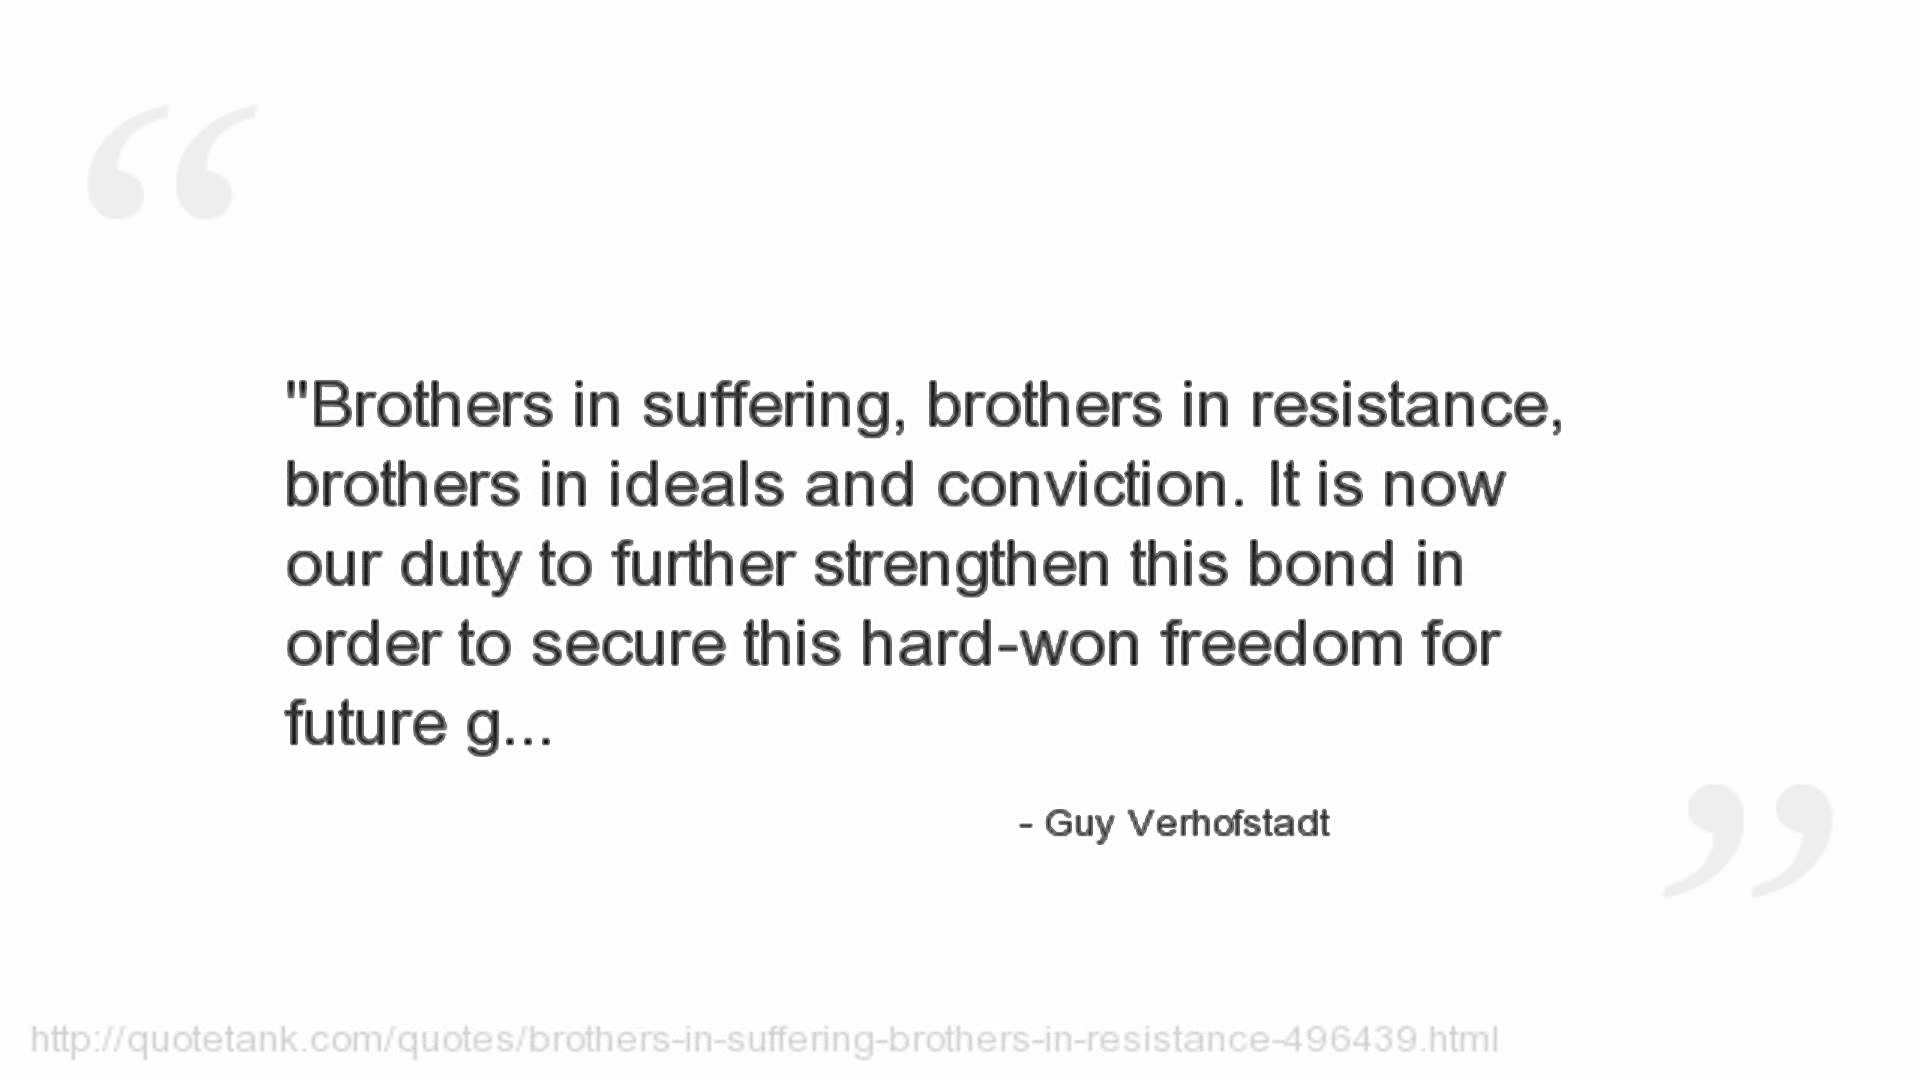 Guy Verhofstadt's quote